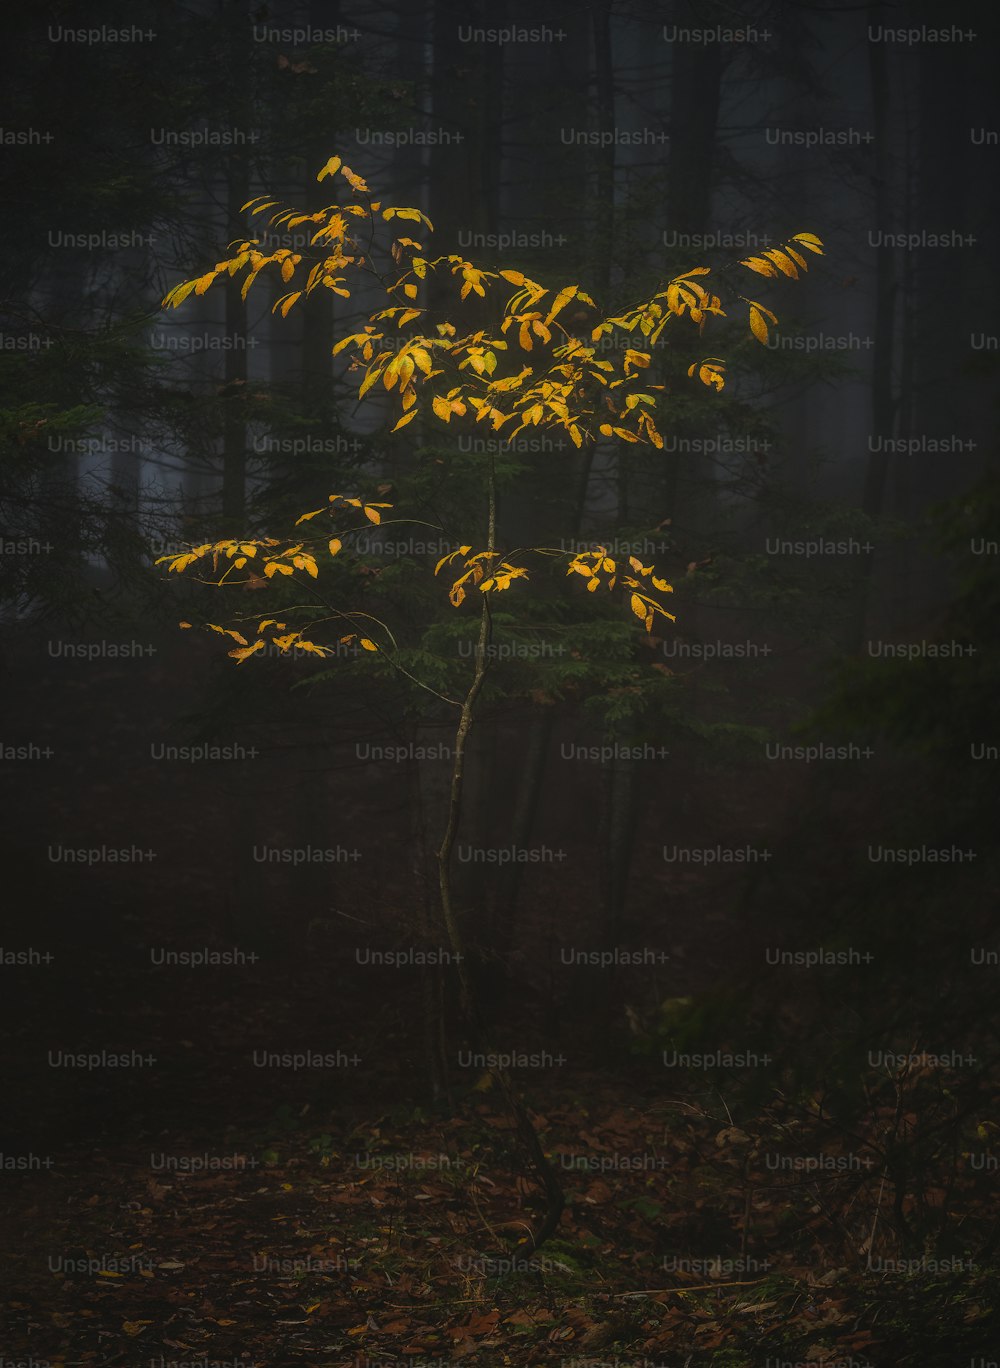 Ein Baum mit gelben Blättern